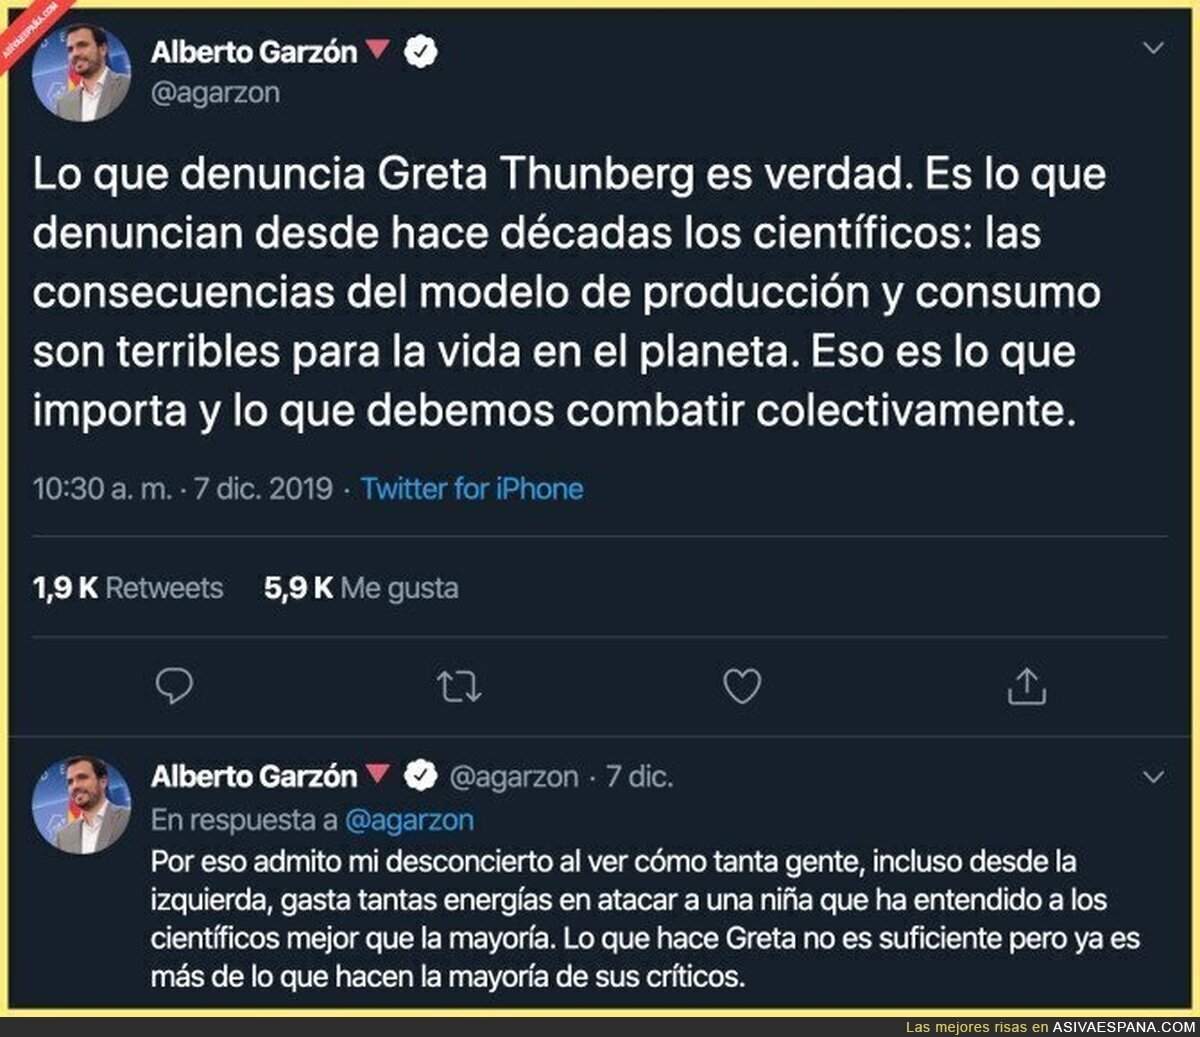 La aplaudida reflexión de Alberto Garzón sobre Greta Thunberg